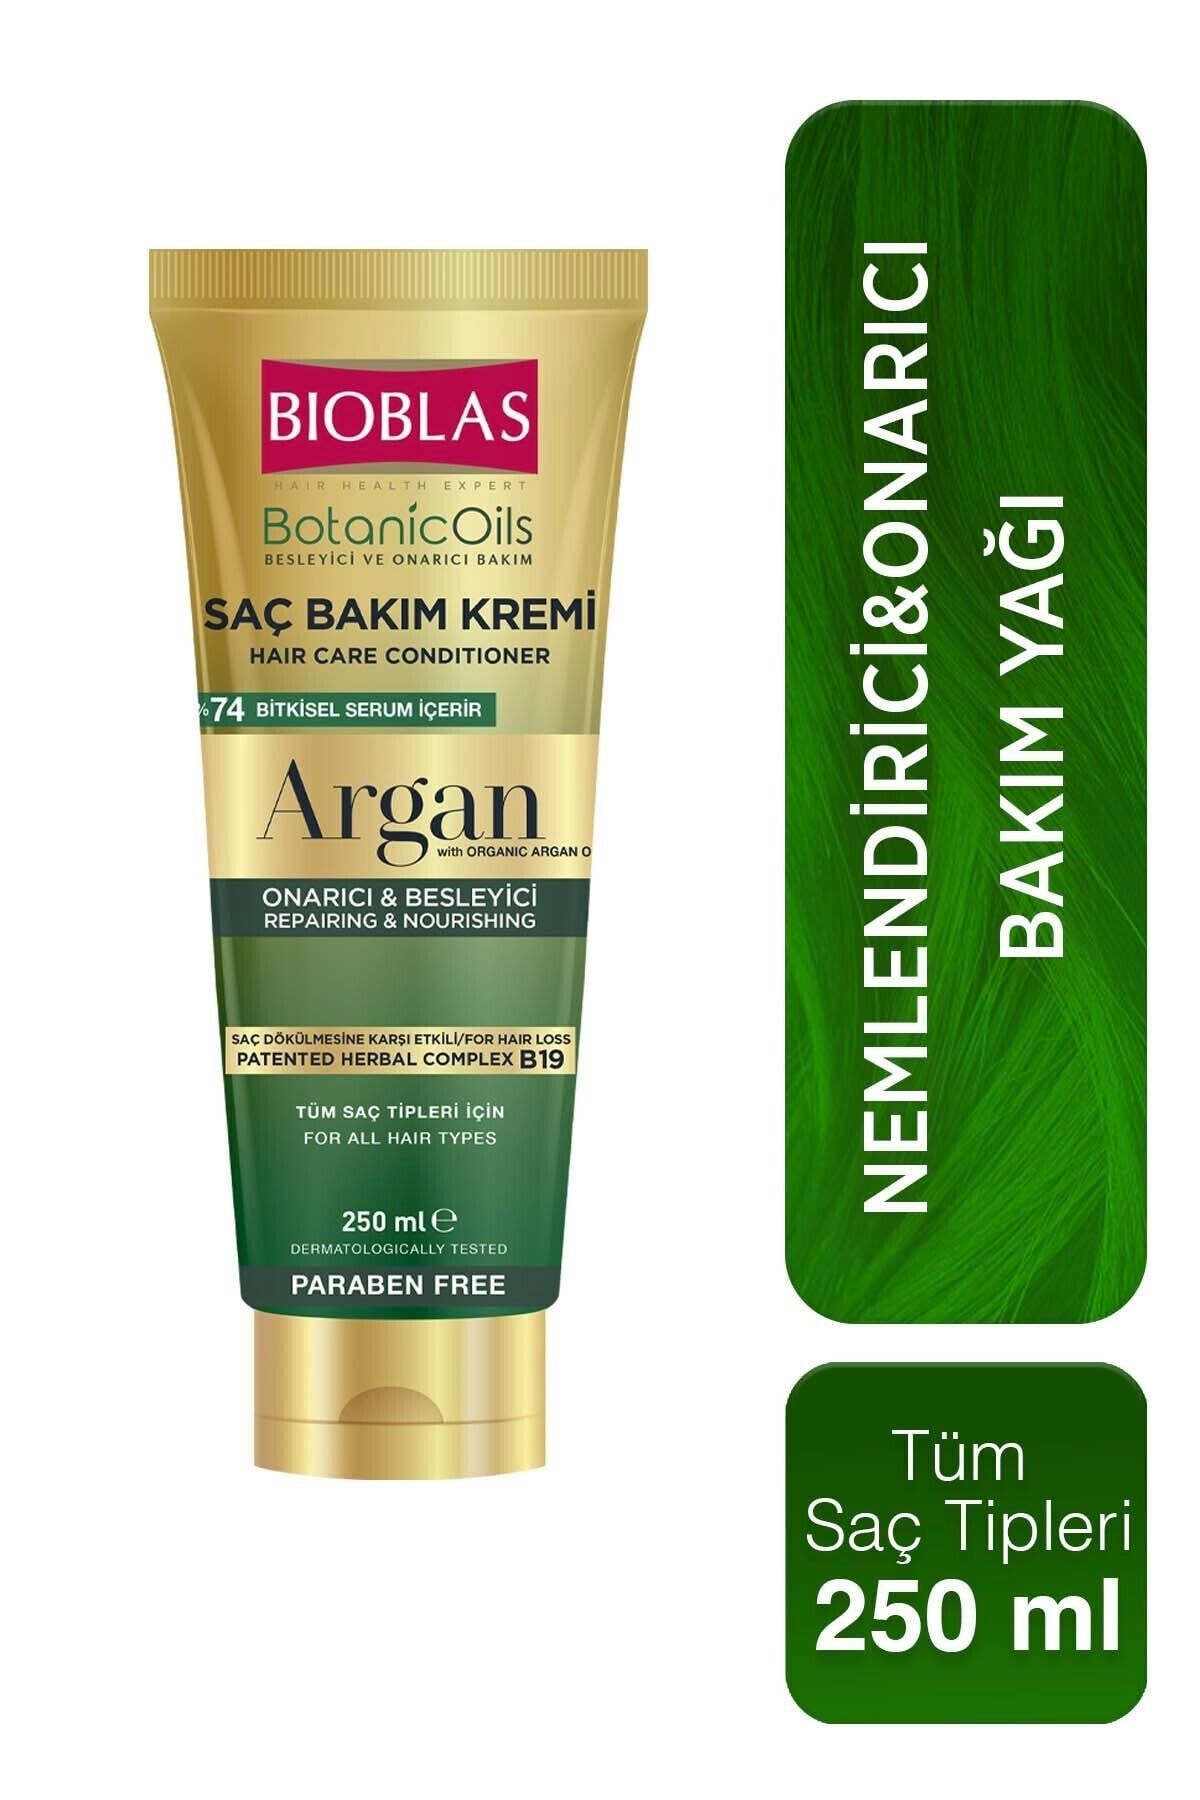 Bioblas Botanics Oil Argan Yağlı Saç Bakım Kremi 250ml